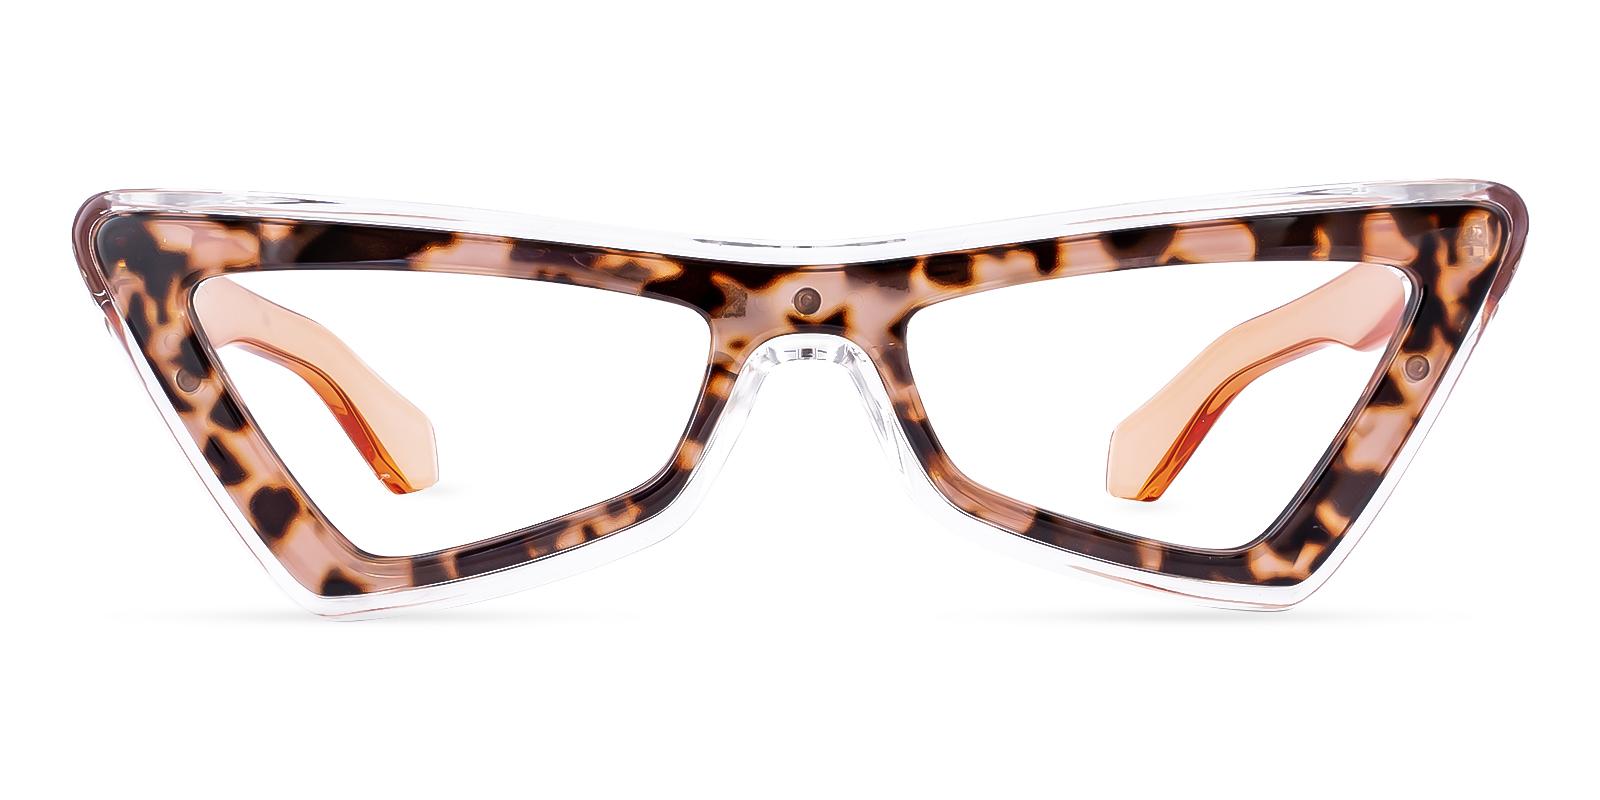 Alleloory Tortoise Acetate Eyeglasses , UniversalBridgeFit Frames from ABBE Glasses